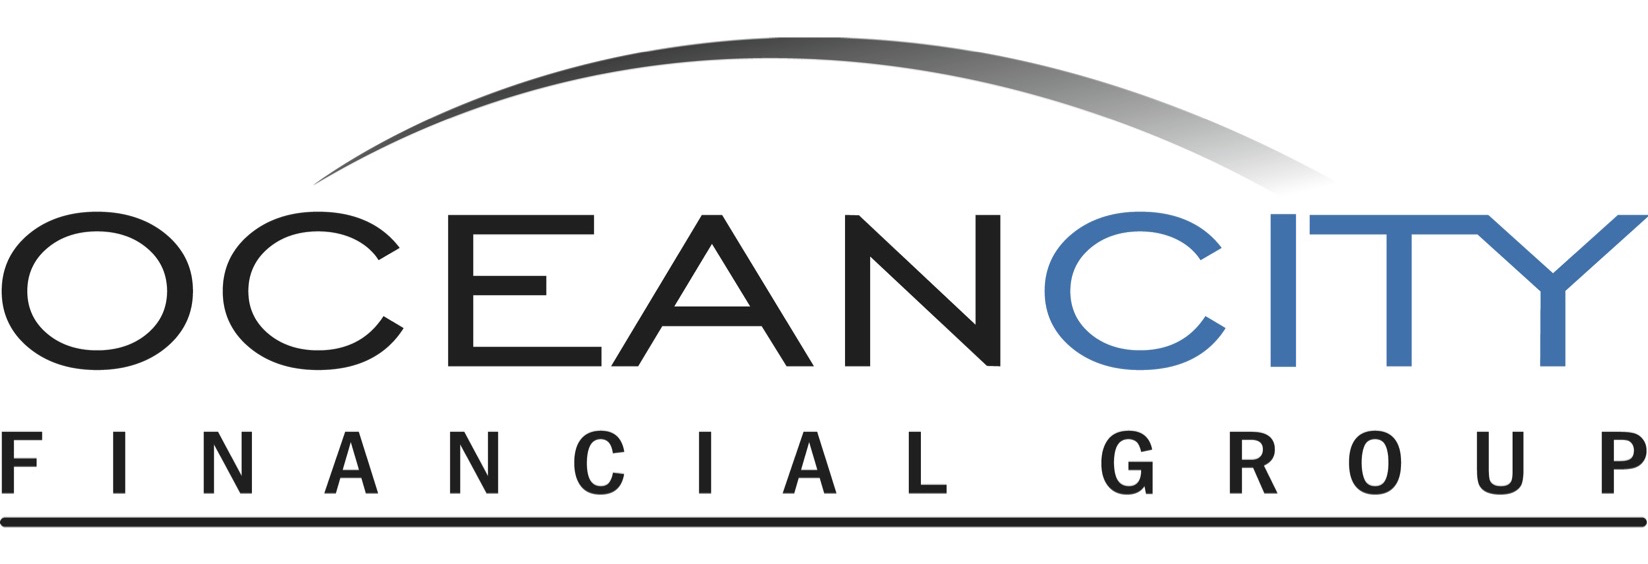 Ocean City Financial Group's Logo